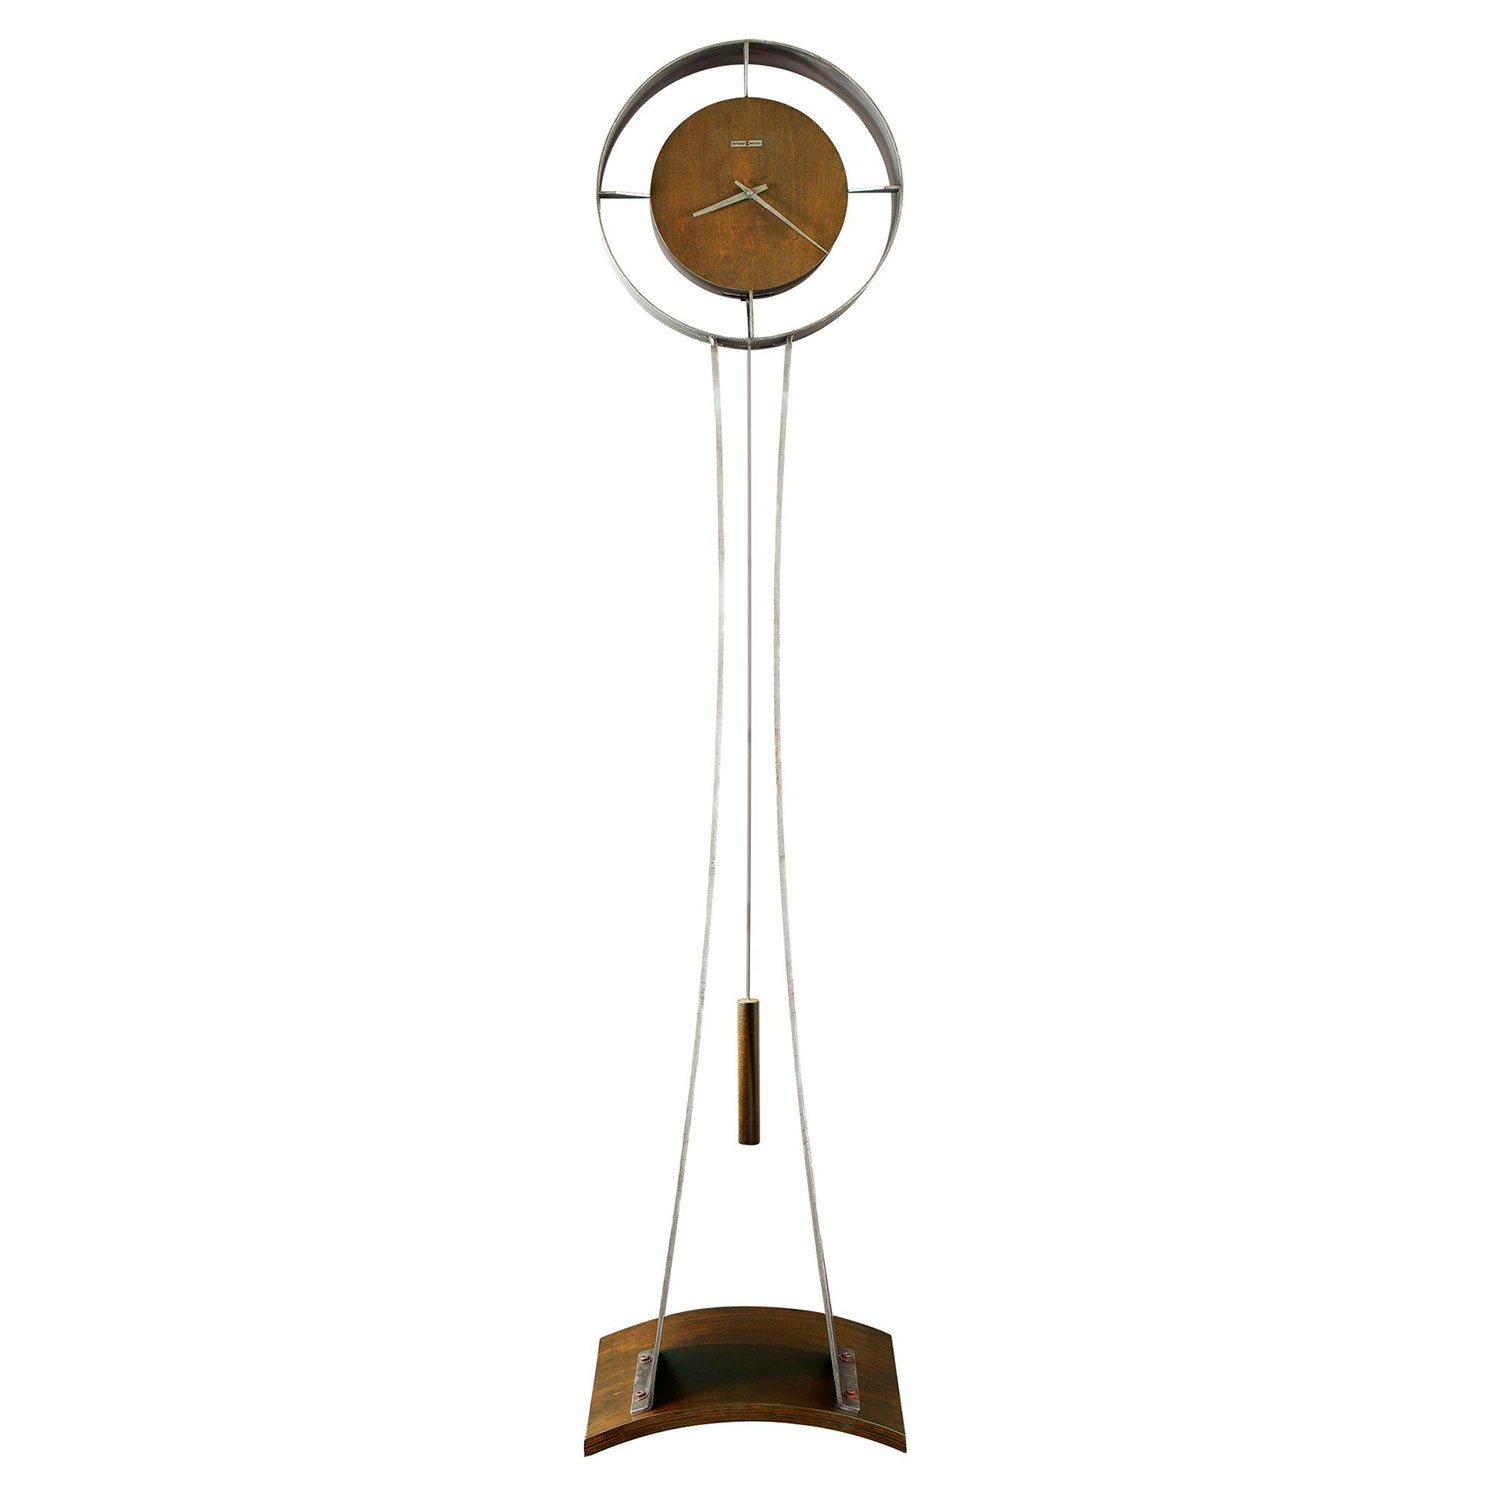 Напольные часы Howard miller 615-108 аксессуары для мебели 1 основание орех эксклюзив